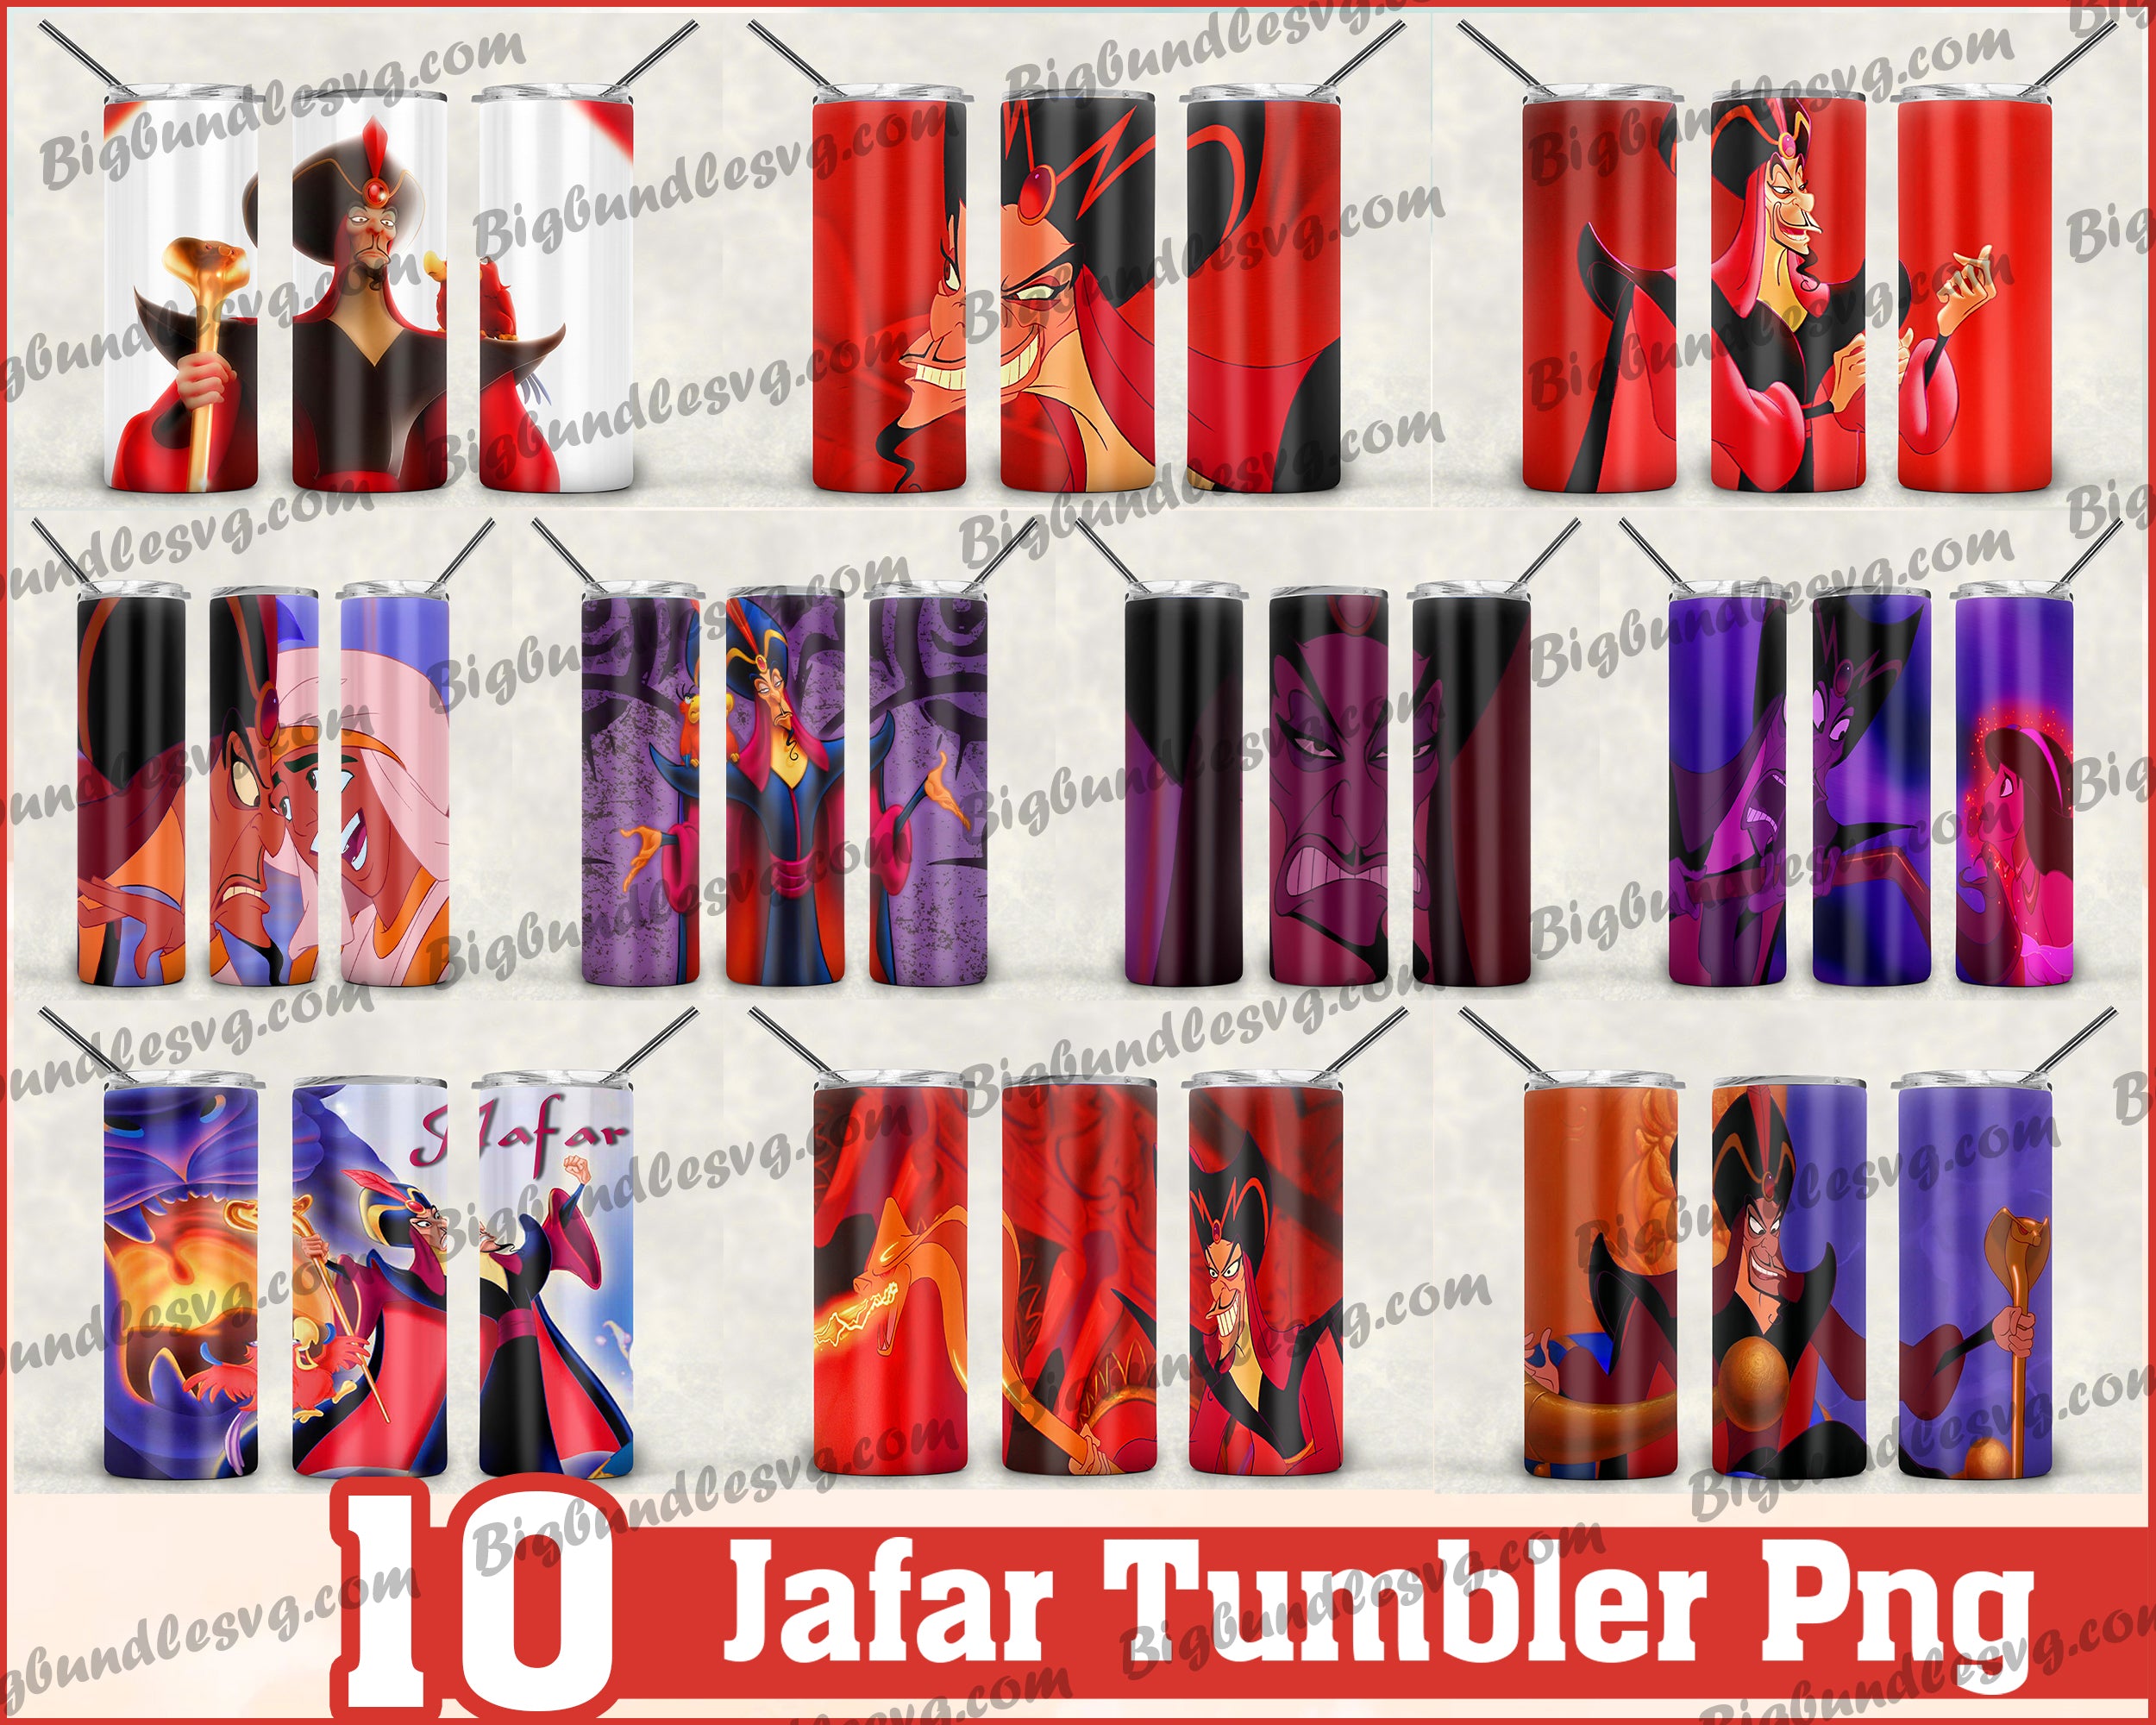 Jafar Tumbler - Jafar PNG - Tumbler design - Digital download